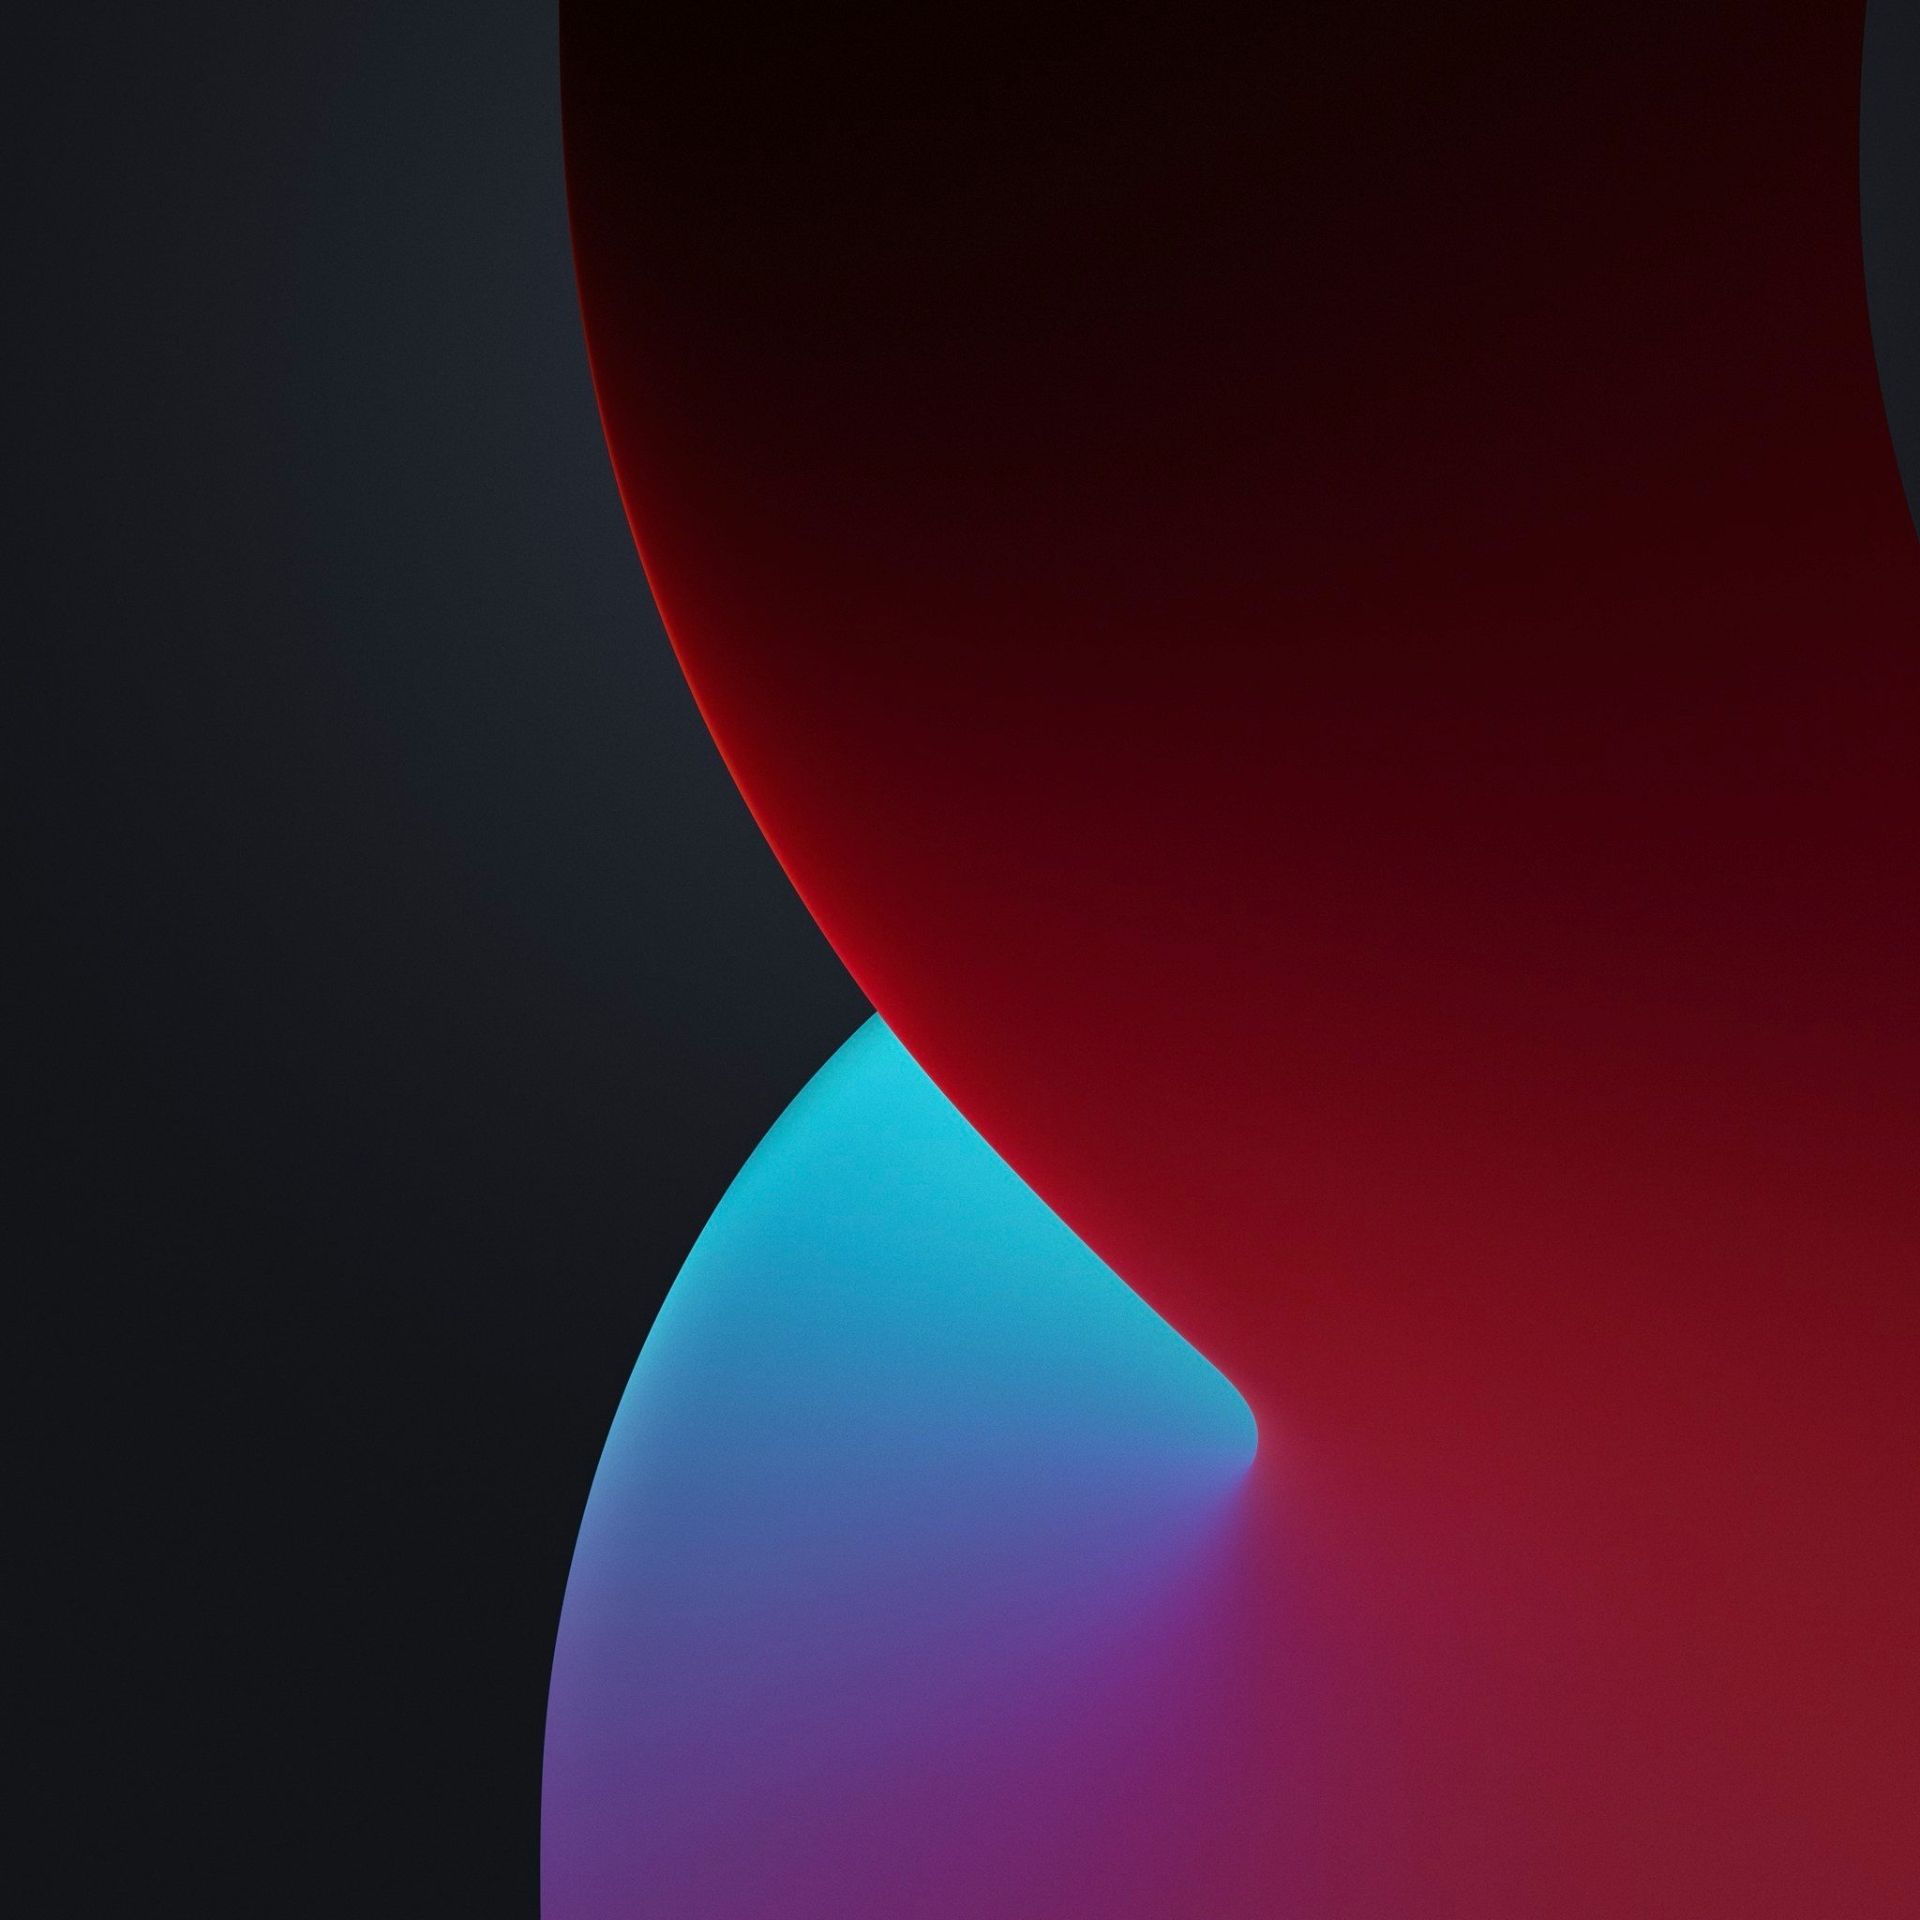 والپیپر iOS 14 حالت تاریک رنگ قرمز و آبی و مشکی